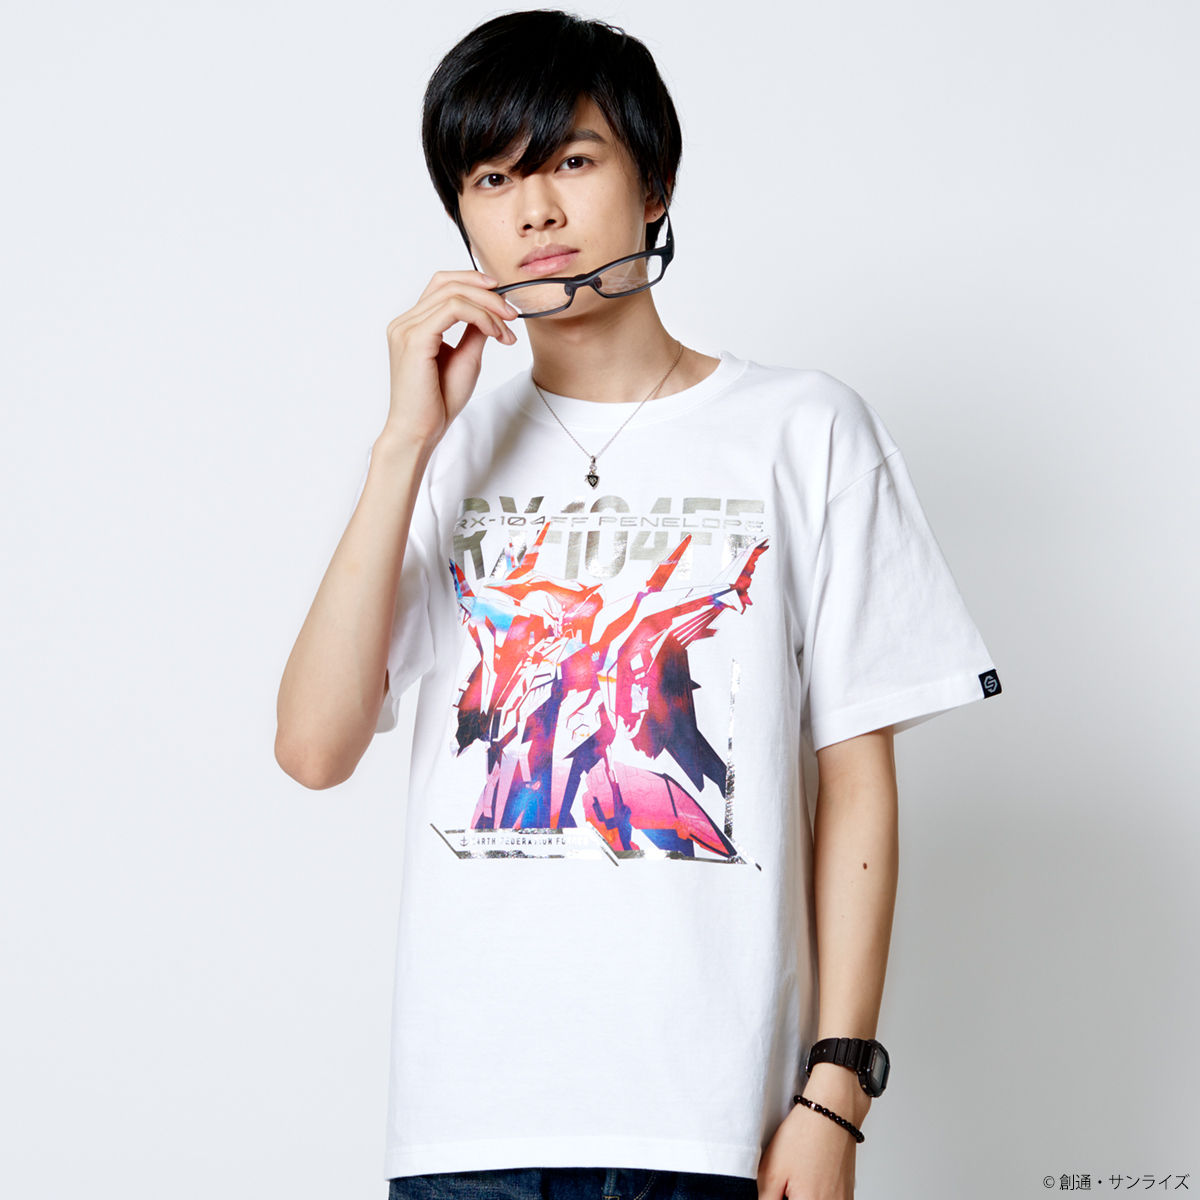  <優惠價>RX-104FF Penelope T-shirt—Mobile Suit Gundam Hathaway/STRICT-G Collaboration